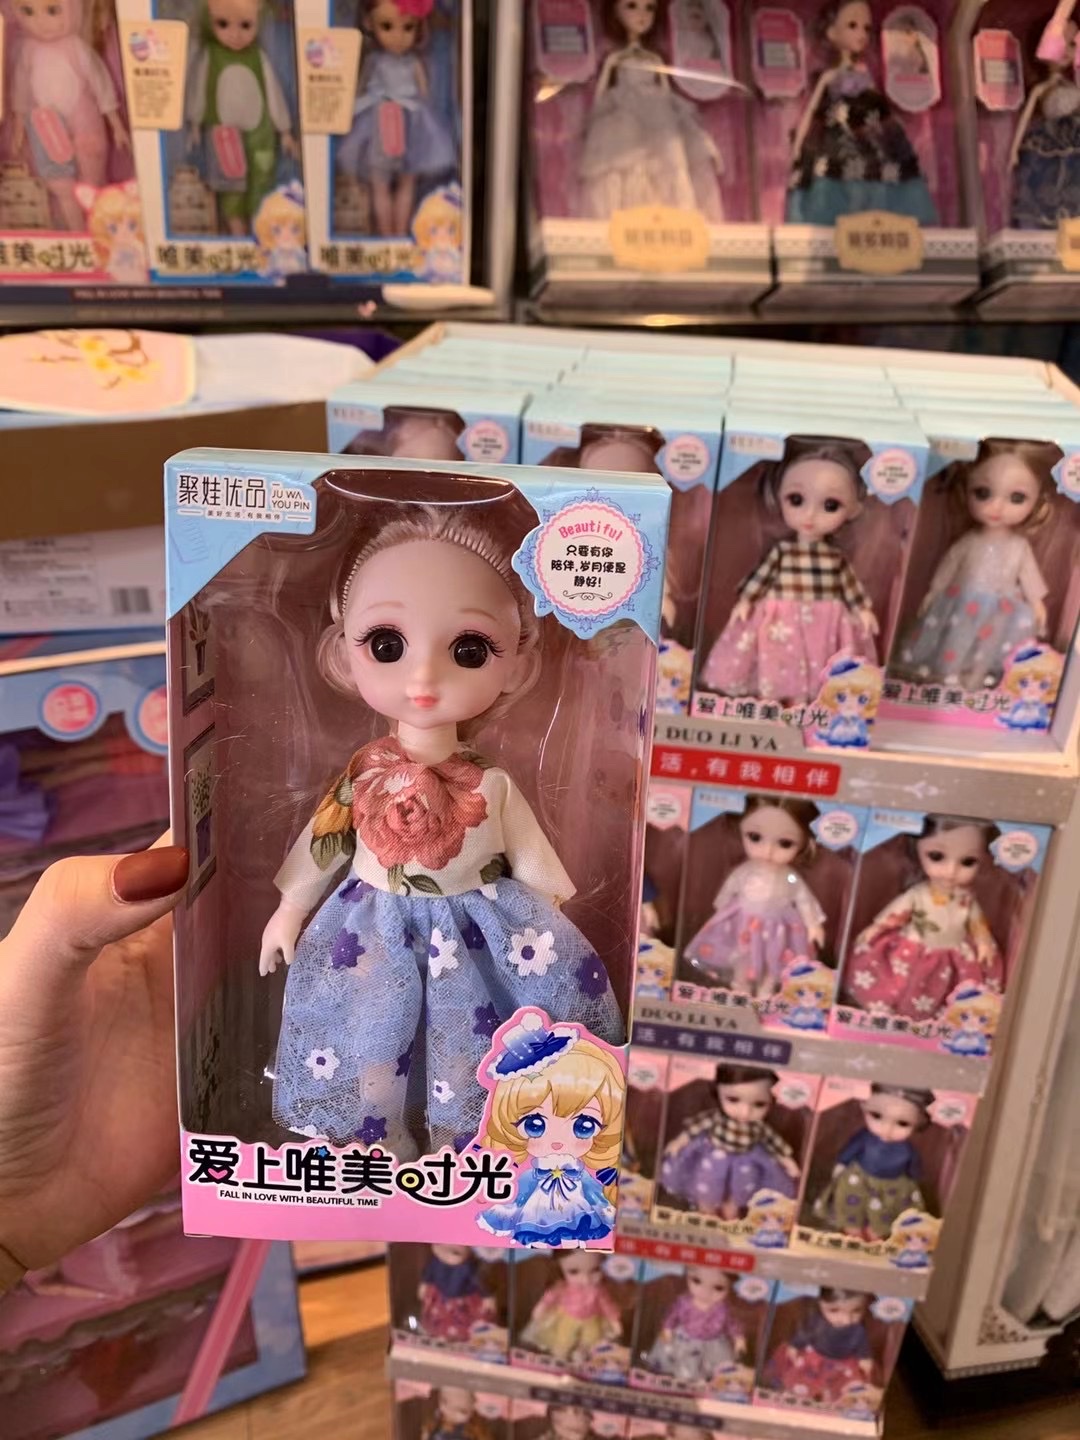 生日礼物 培训机构礼物 6寸 小萝莉娃娃 3D眼睛 超市专供 2021年娃娃爆款详情图4